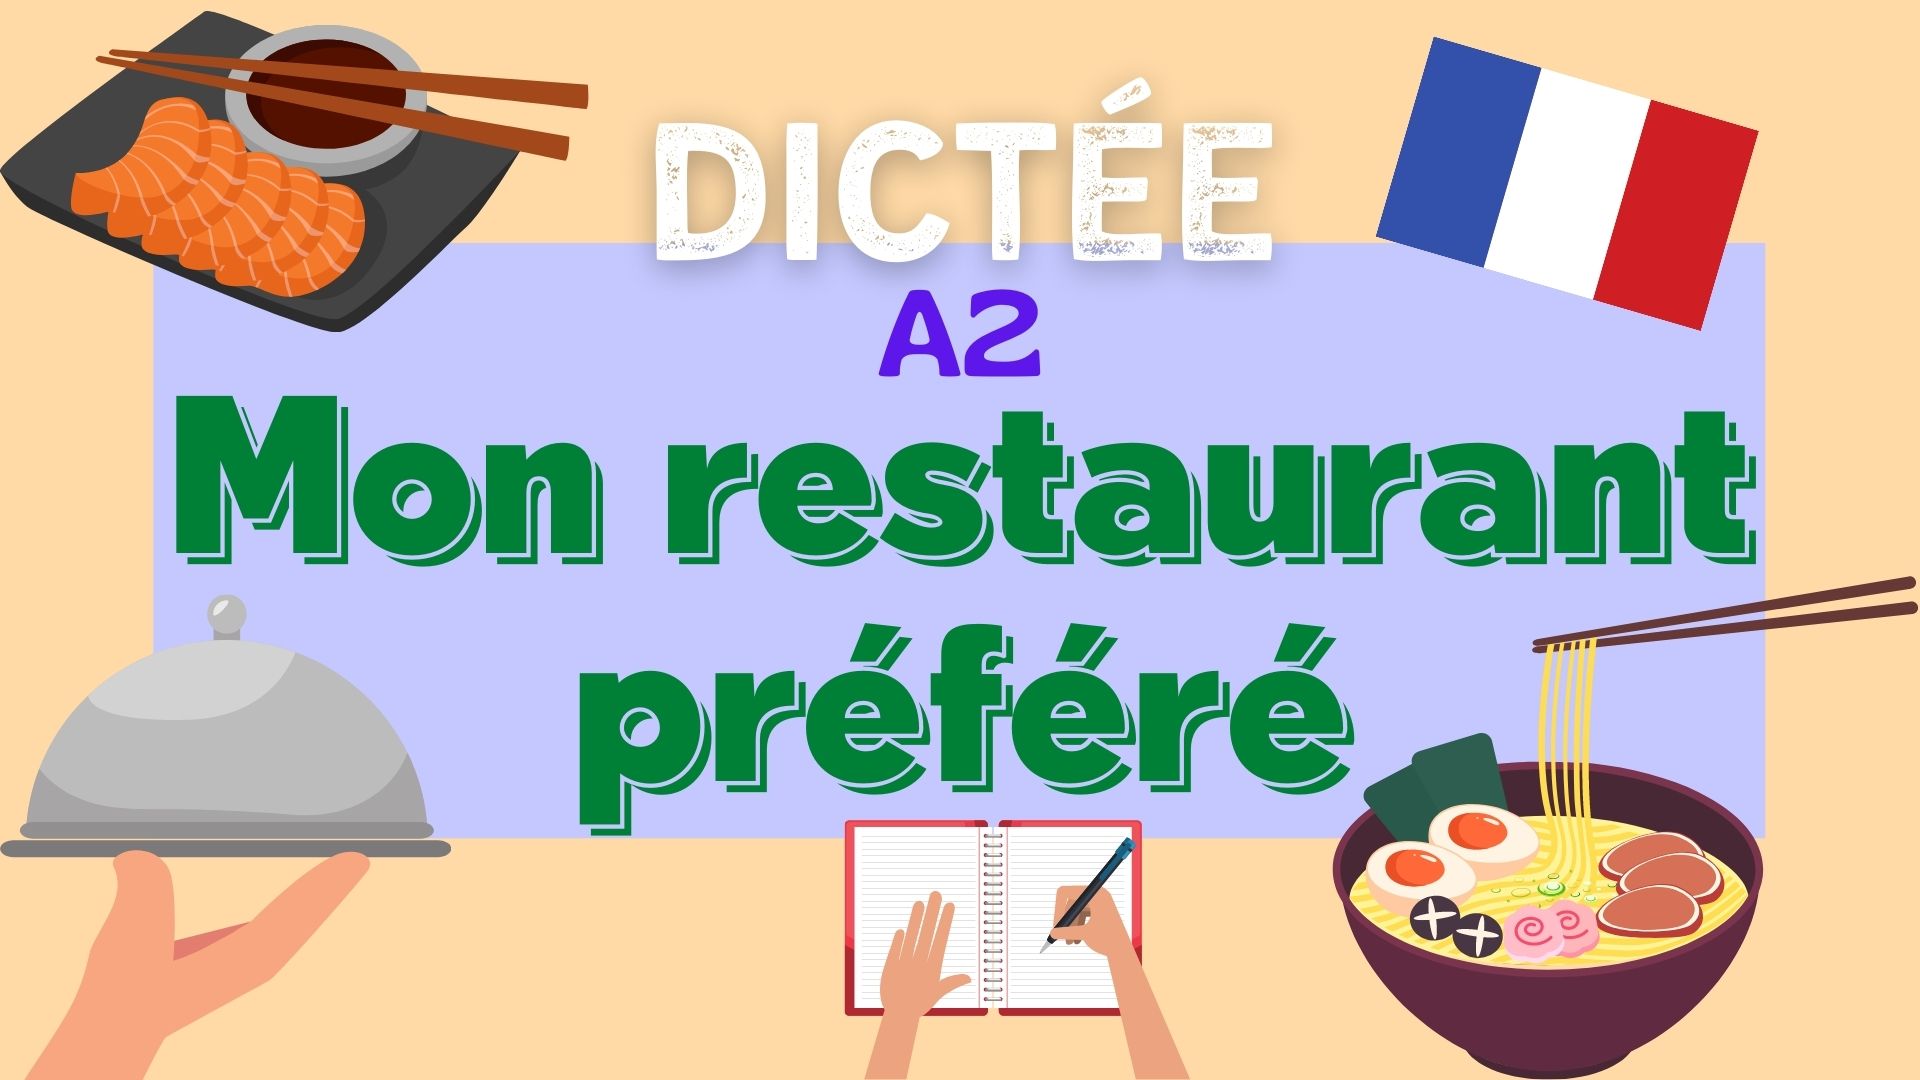 Dictée : Mon restaurant préféré - French dictation exercise